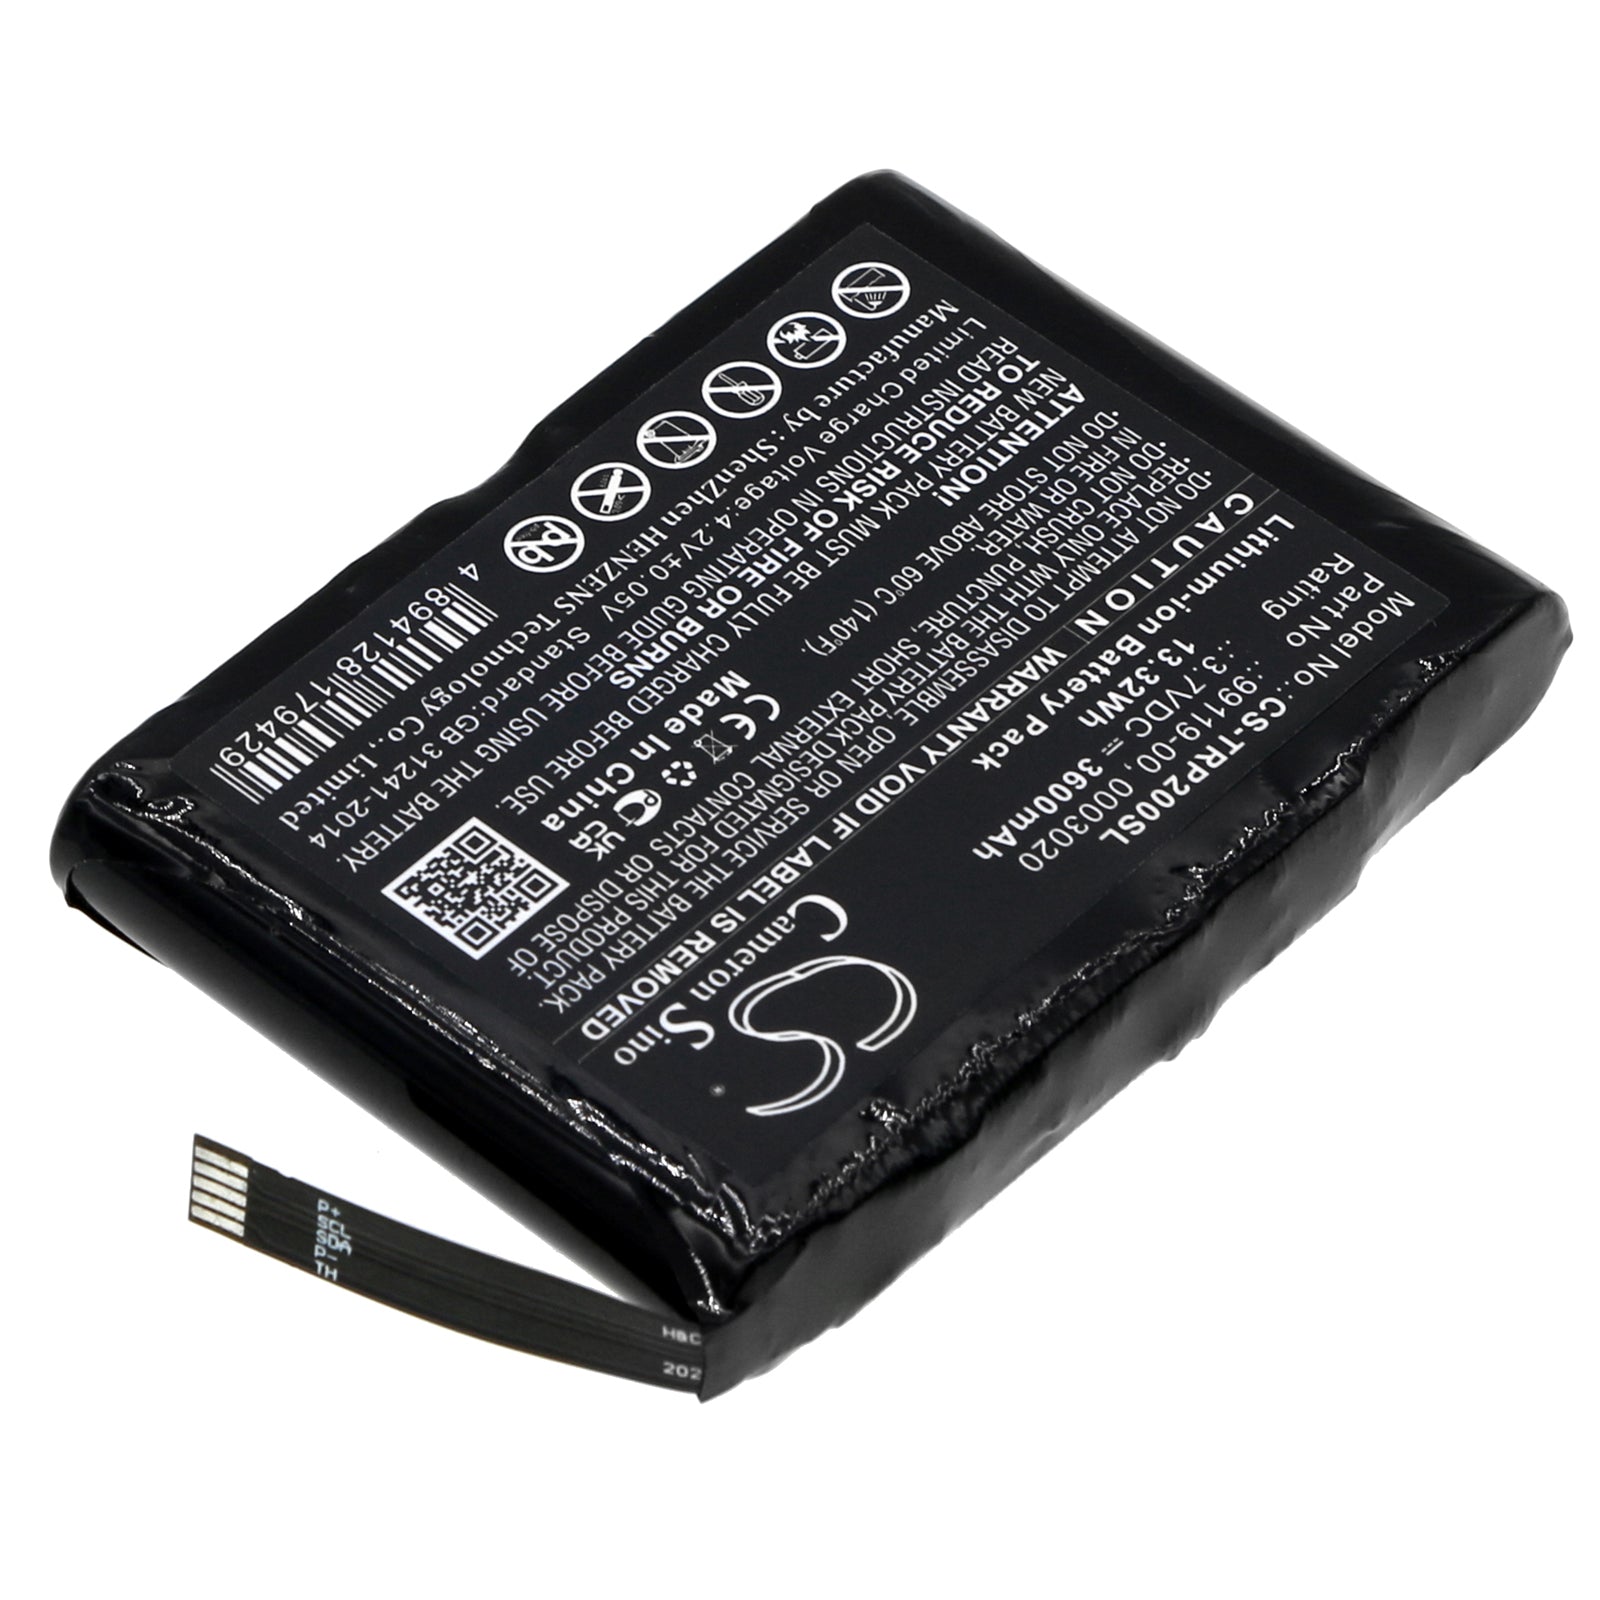 3600mAh 99119-00, 0003020 Battery for Trimble R1, PG200-SMAVtronics